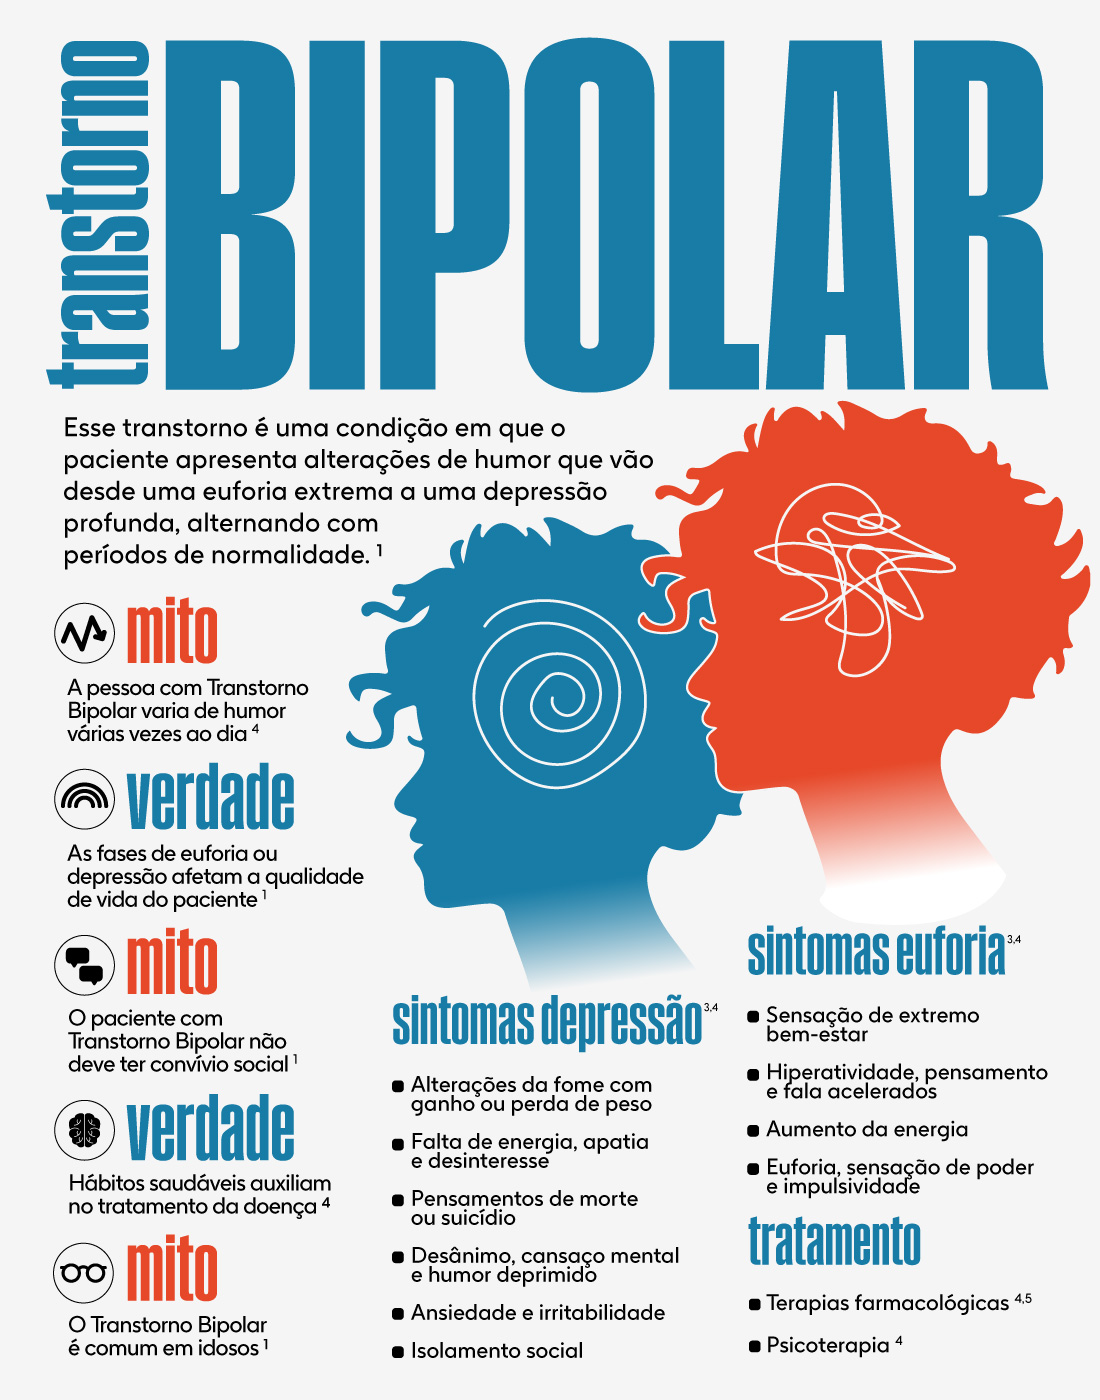 Bipolaridade: sintomas, tipos e como lidar com transtorno bipolar